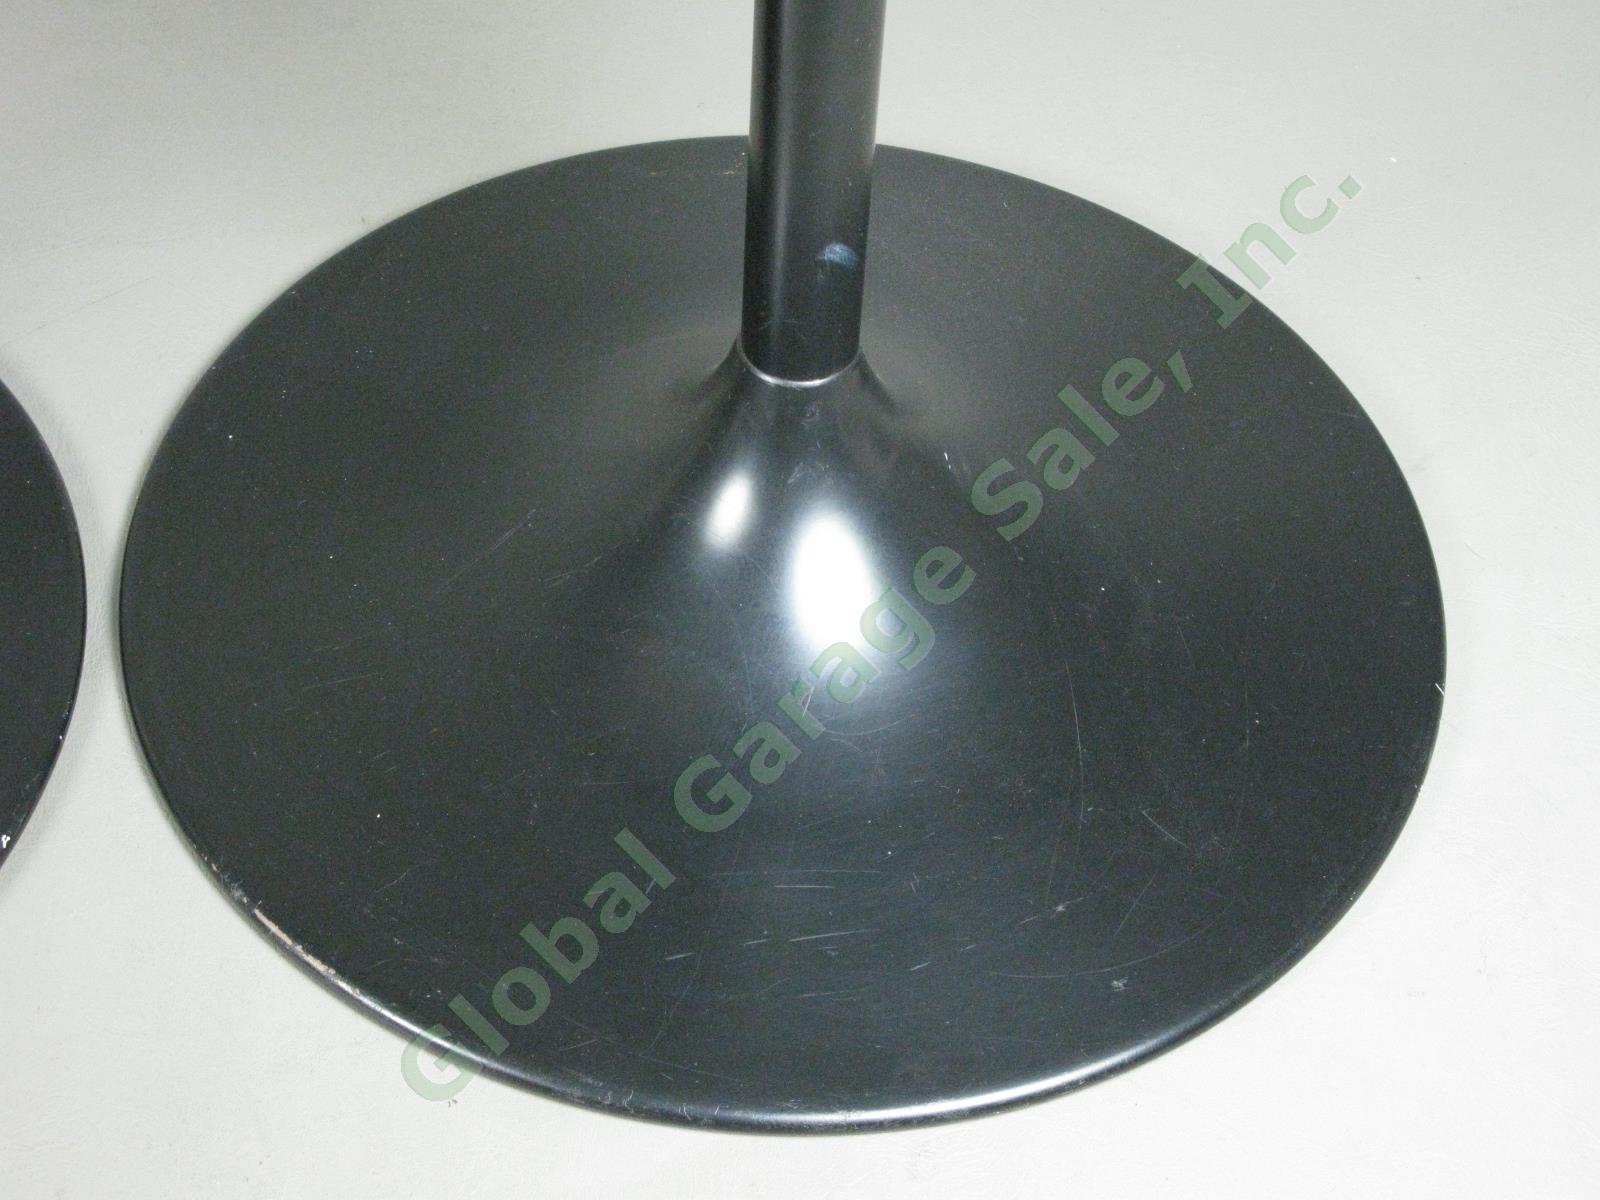 Bose 901 Series V Speaker Stands Black Tulip Pedestal 18" Tall 4-Holes No Res!! 2